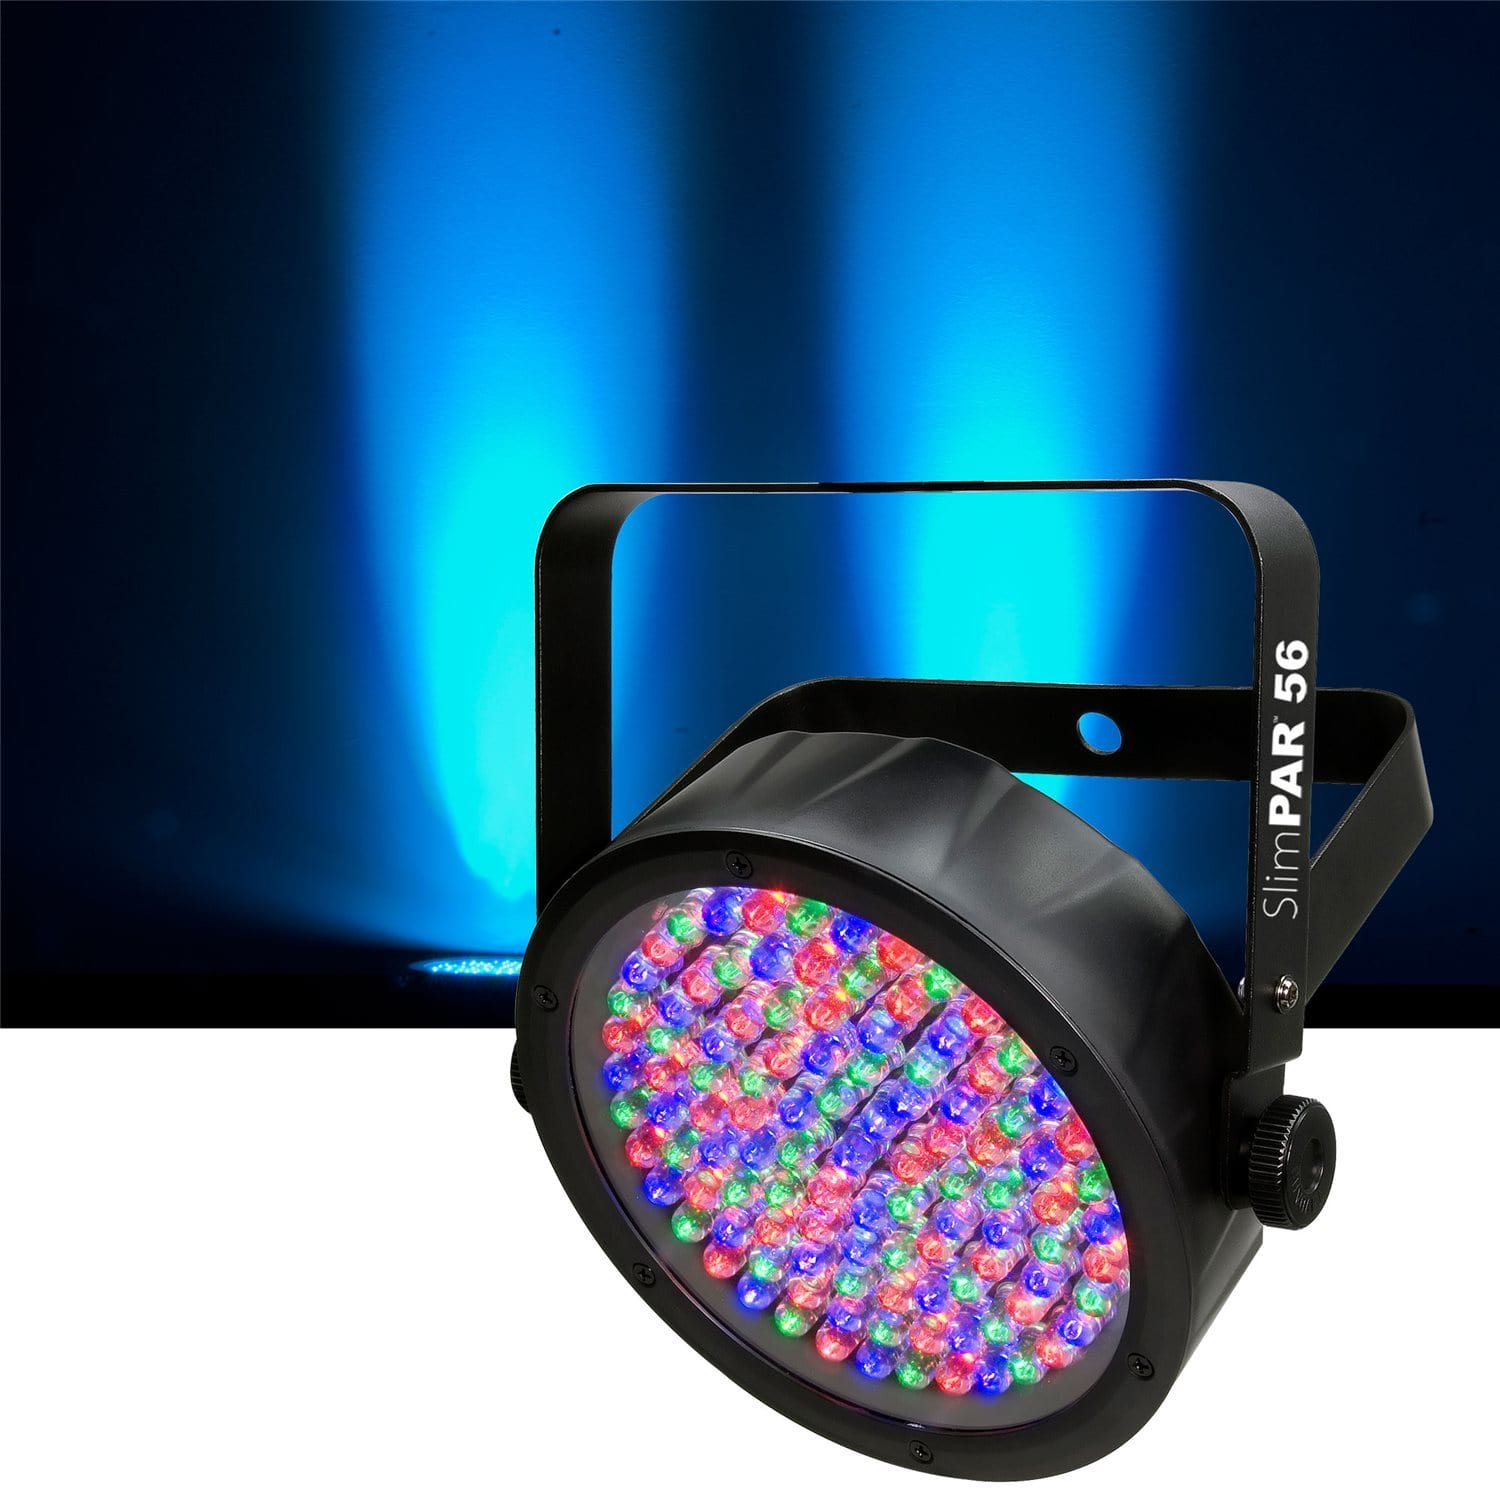 Chauvet SlimPAR 56 RGB LED Wash Light 4-Pack with Gator Bag - PSSL ProSound and Stage Lighting